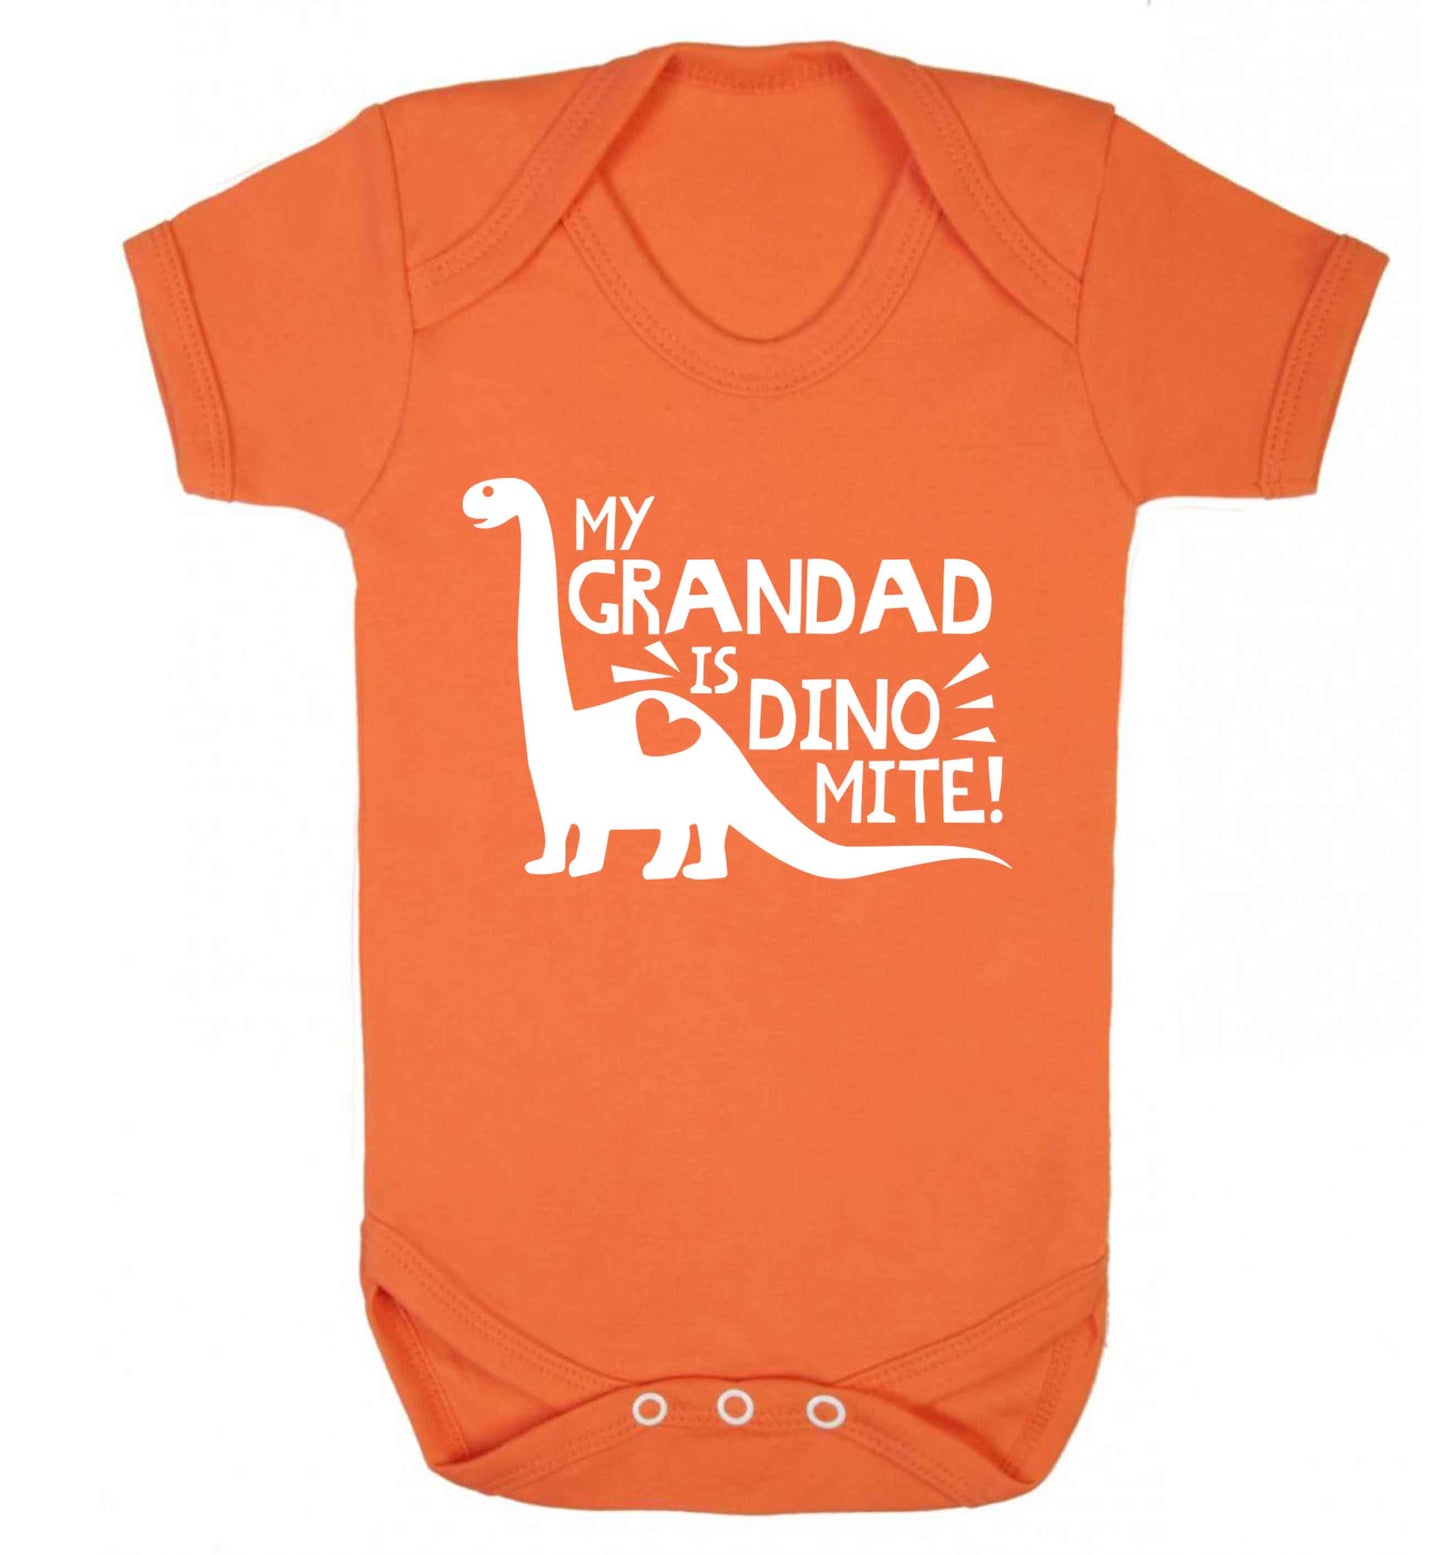 My grandad is dinomite! Baby Vest orange 18-24 months